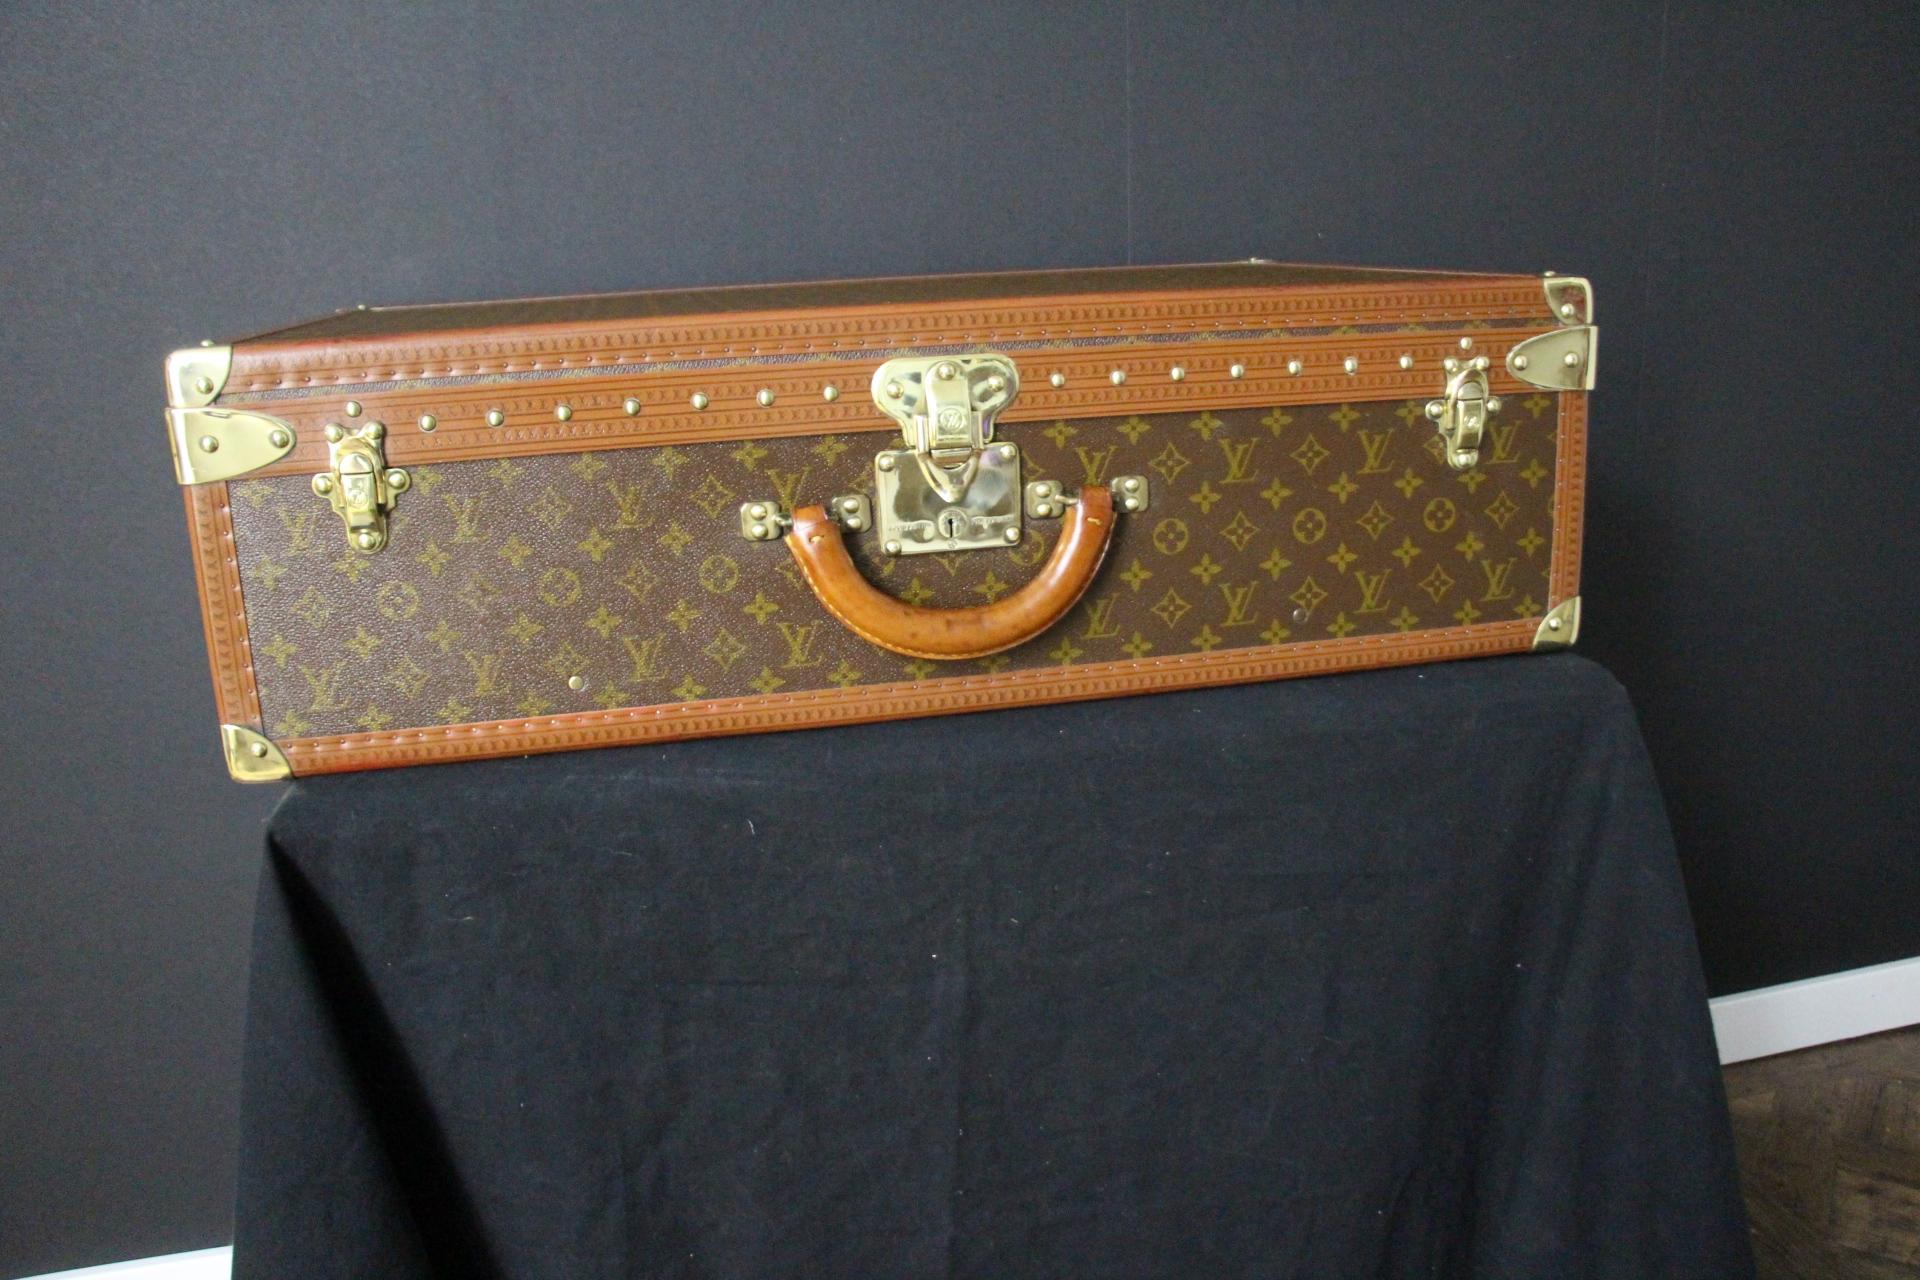 Ce bagage est une magnifique valise Louis Vuitton Alzer monogramme. Cette valise de 75 cm est presque la plus grande et certainement la plus luxueuse des valises Louis Vuitton. Il est doté de tous les accessoires en laiton massif estampillés Louis